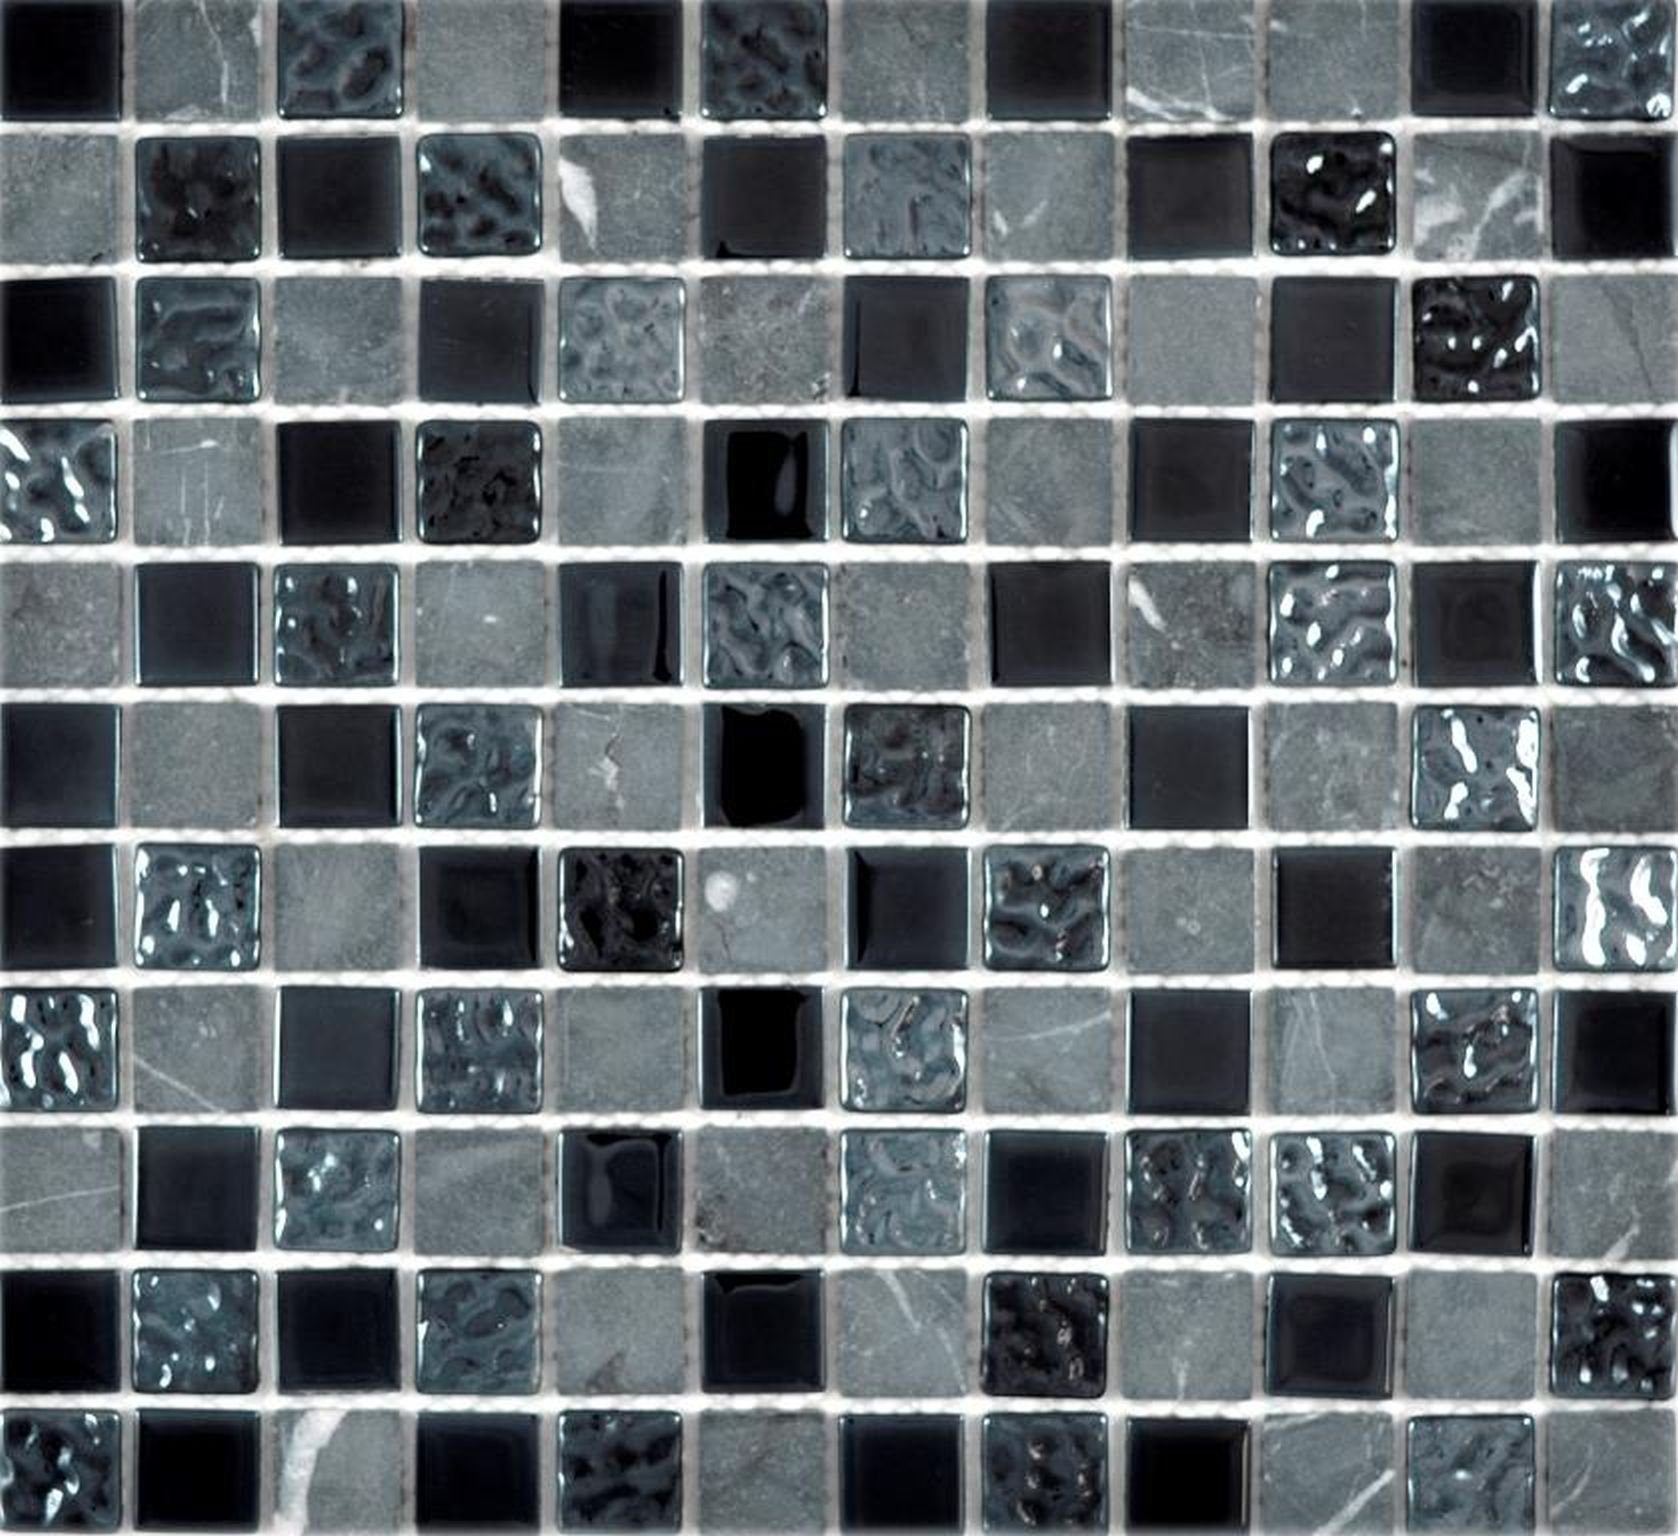 Mosani Mosaikfliesen Glasmosaik Naturstein Mosaik Rustikal steingrau schwarz